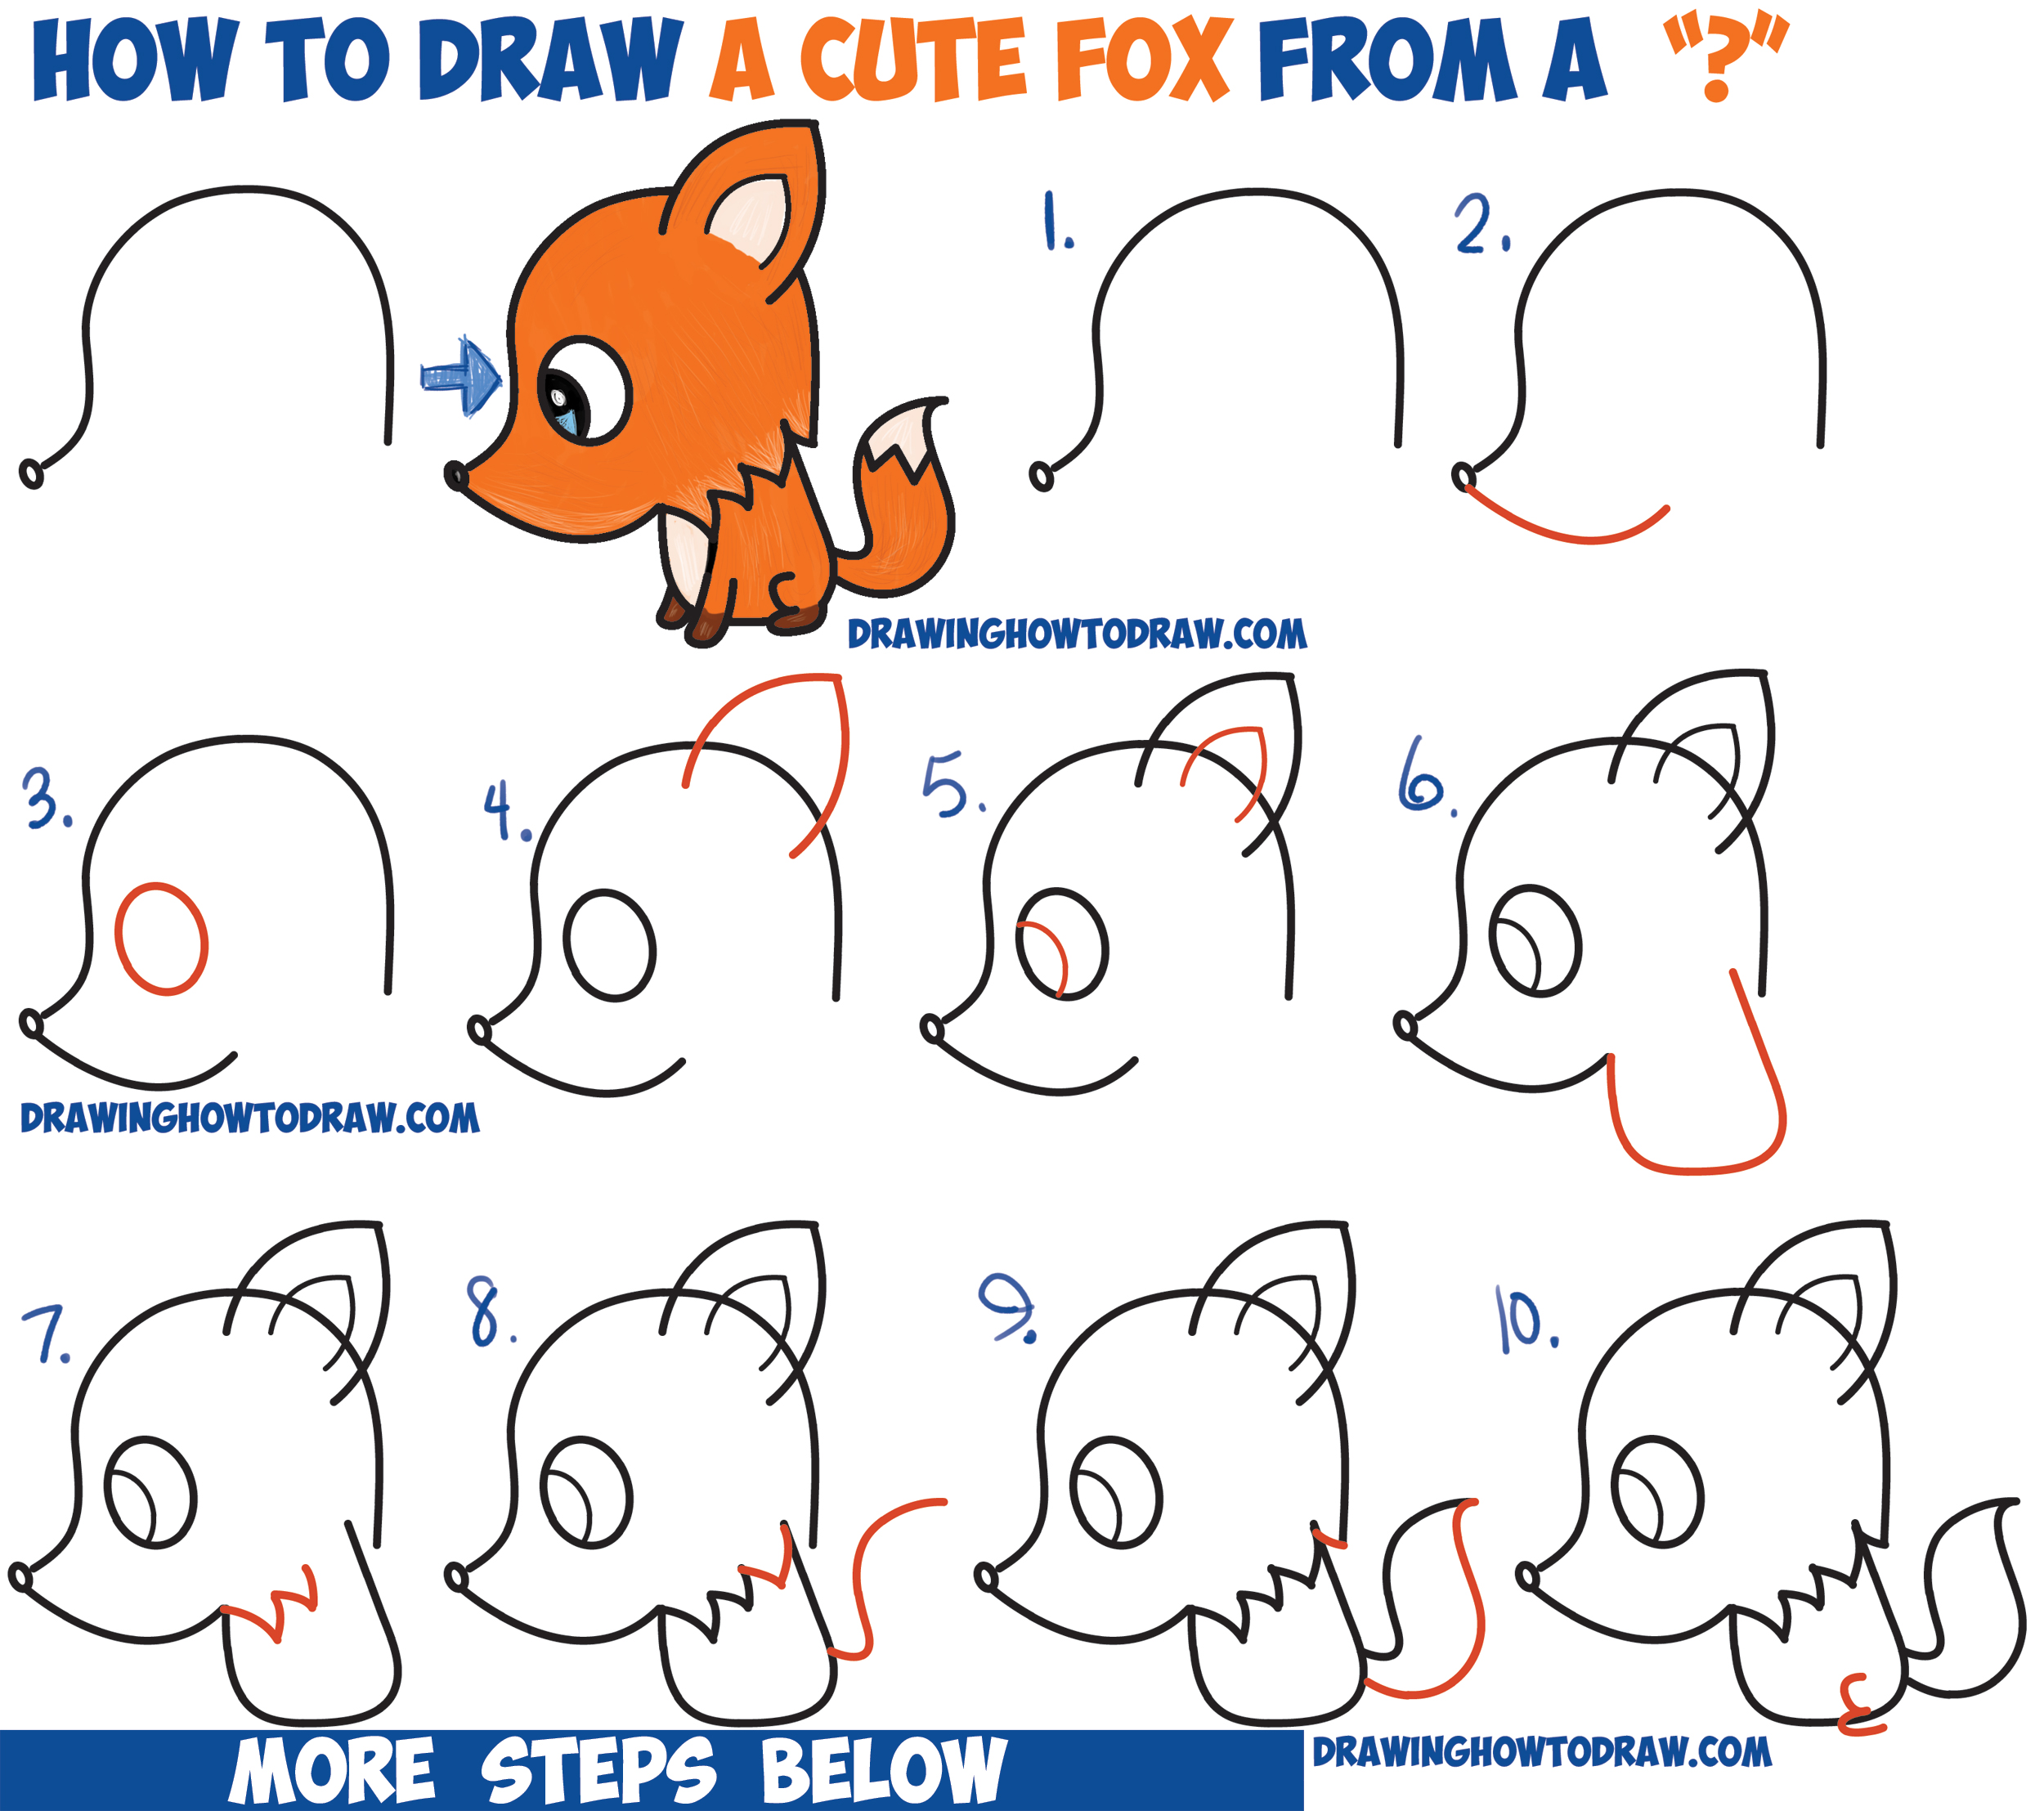 How to Draw a Cute Cartoon Fox from a Question Mark (Kawaii / Chibi